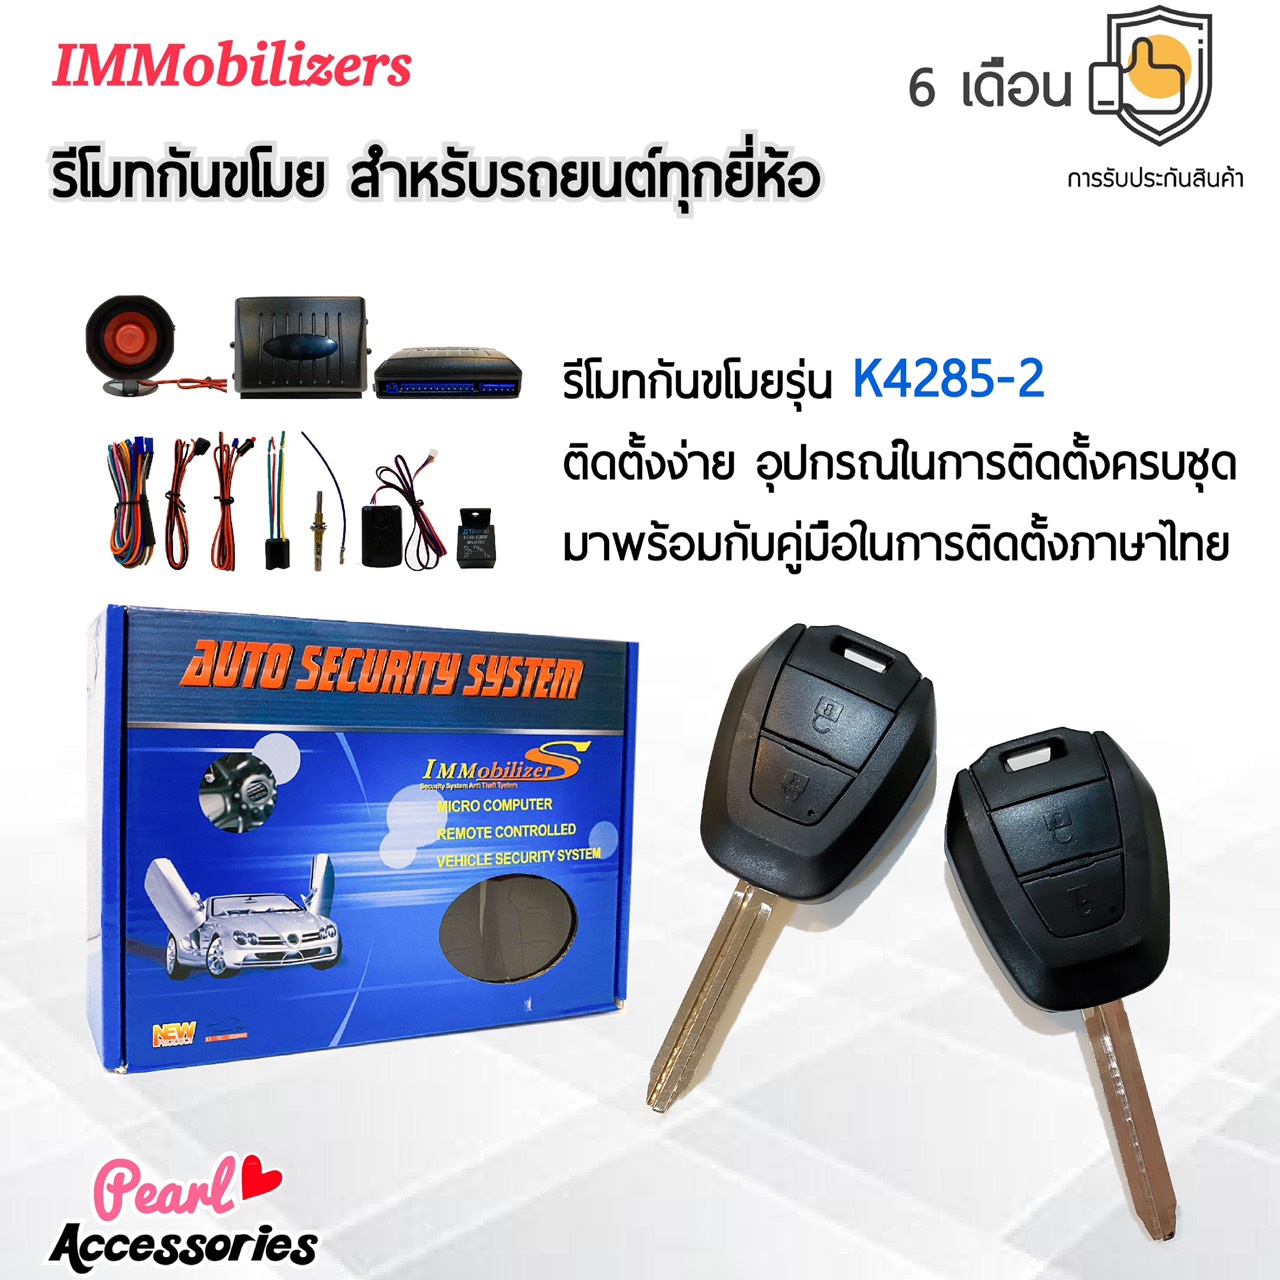 Immobilizers รีโมทกันขโมย K4285-2 กุญแจทรง Isuzu สำหรับรถยนต์ทุกยี่ห้อ อุปกรณ์ในการติดตั้งครบชุด (คู่มือในการติดตั้งภาษาไทย) Auto security system